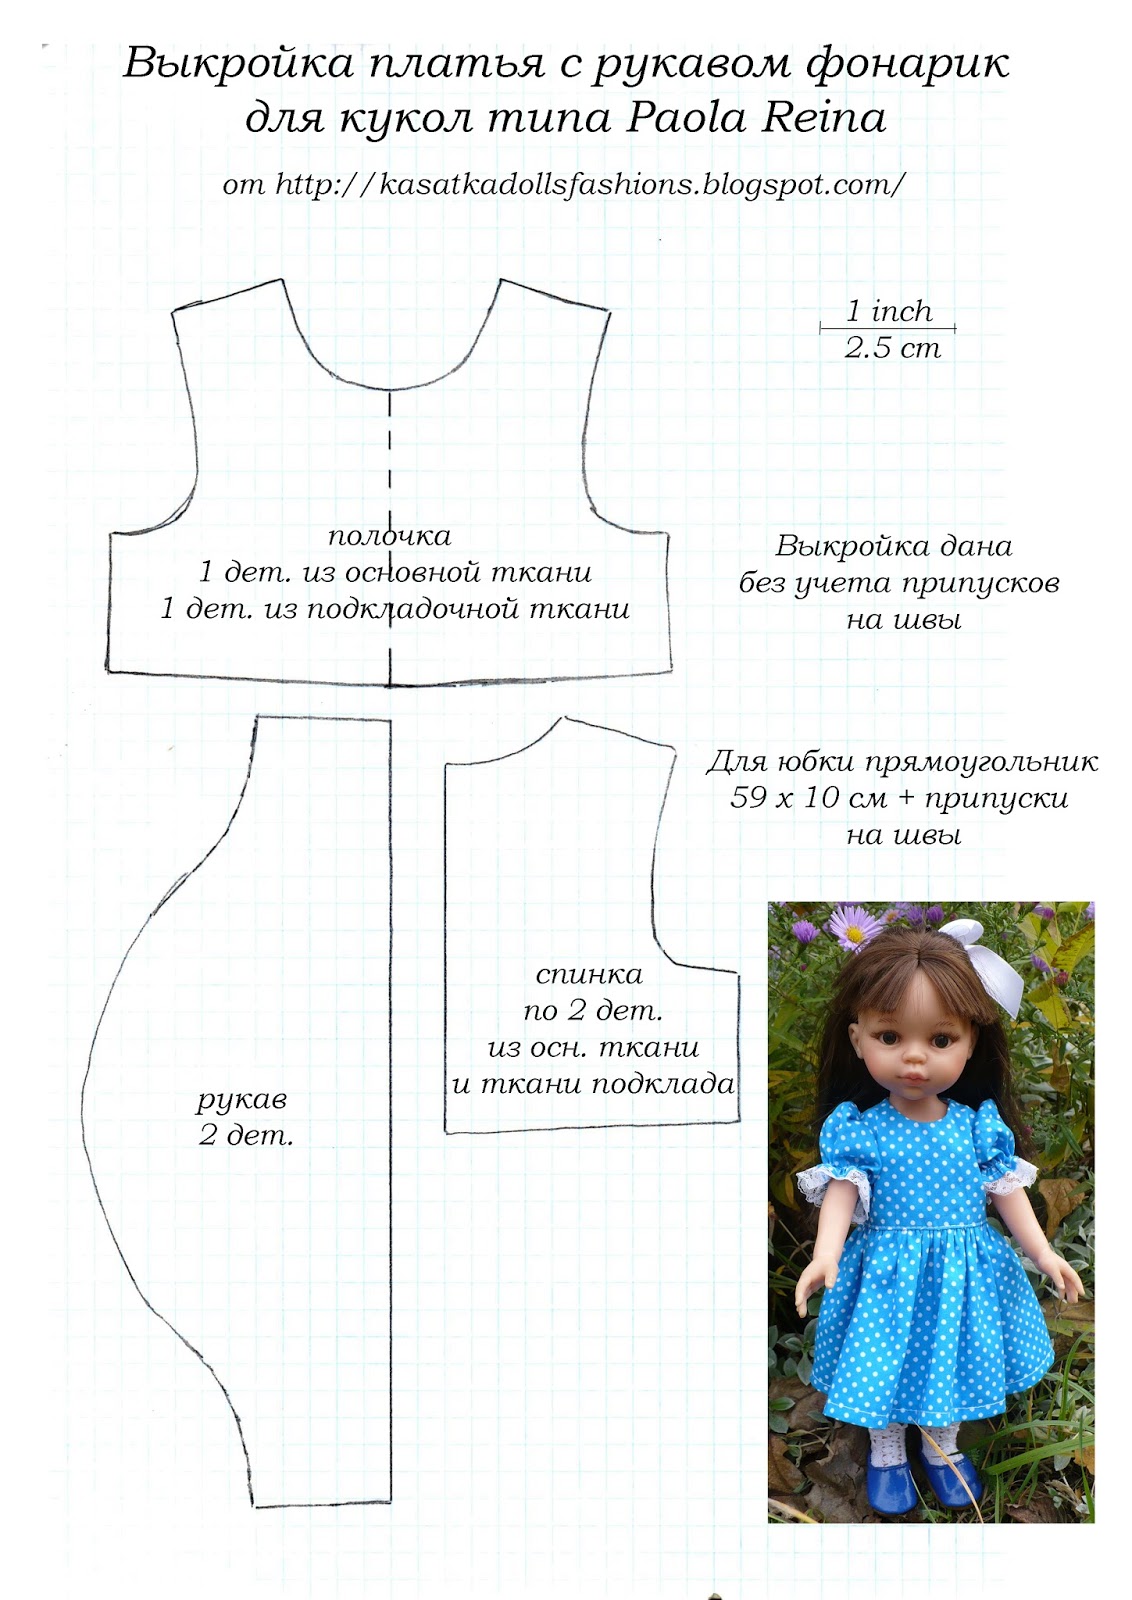 Простое платье для куклы. Выкройка платье для куклы Паола Рейна Paola Reina (32 см). Выкройка вязаного платья для куклы Паола Рейна 32см. Платье для куклы выкройка для начинающих на Paola Reina. Выкройки для куклы Паола Рейна 32 см.